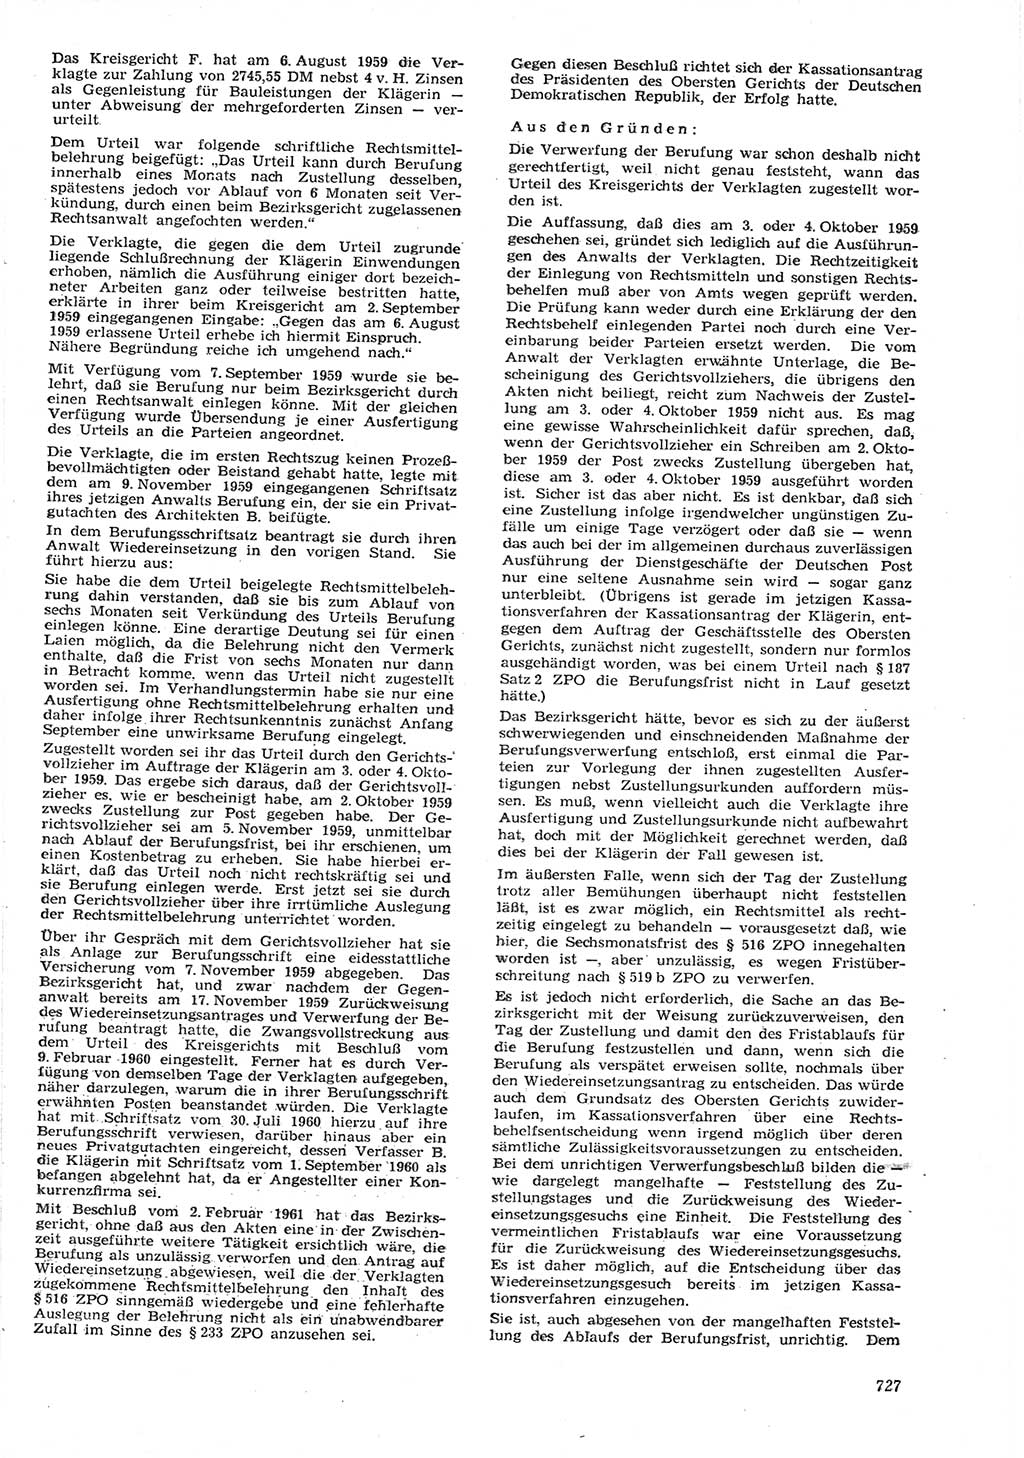 Neue Justiz (NJ), Zeitschrift für Recht und Rechtswissenschaft [Deutsche Demokratische Republik (DDR)], 15. Jahrgang 1961, Seite 727 (NJ DDR 1961, S. 727)